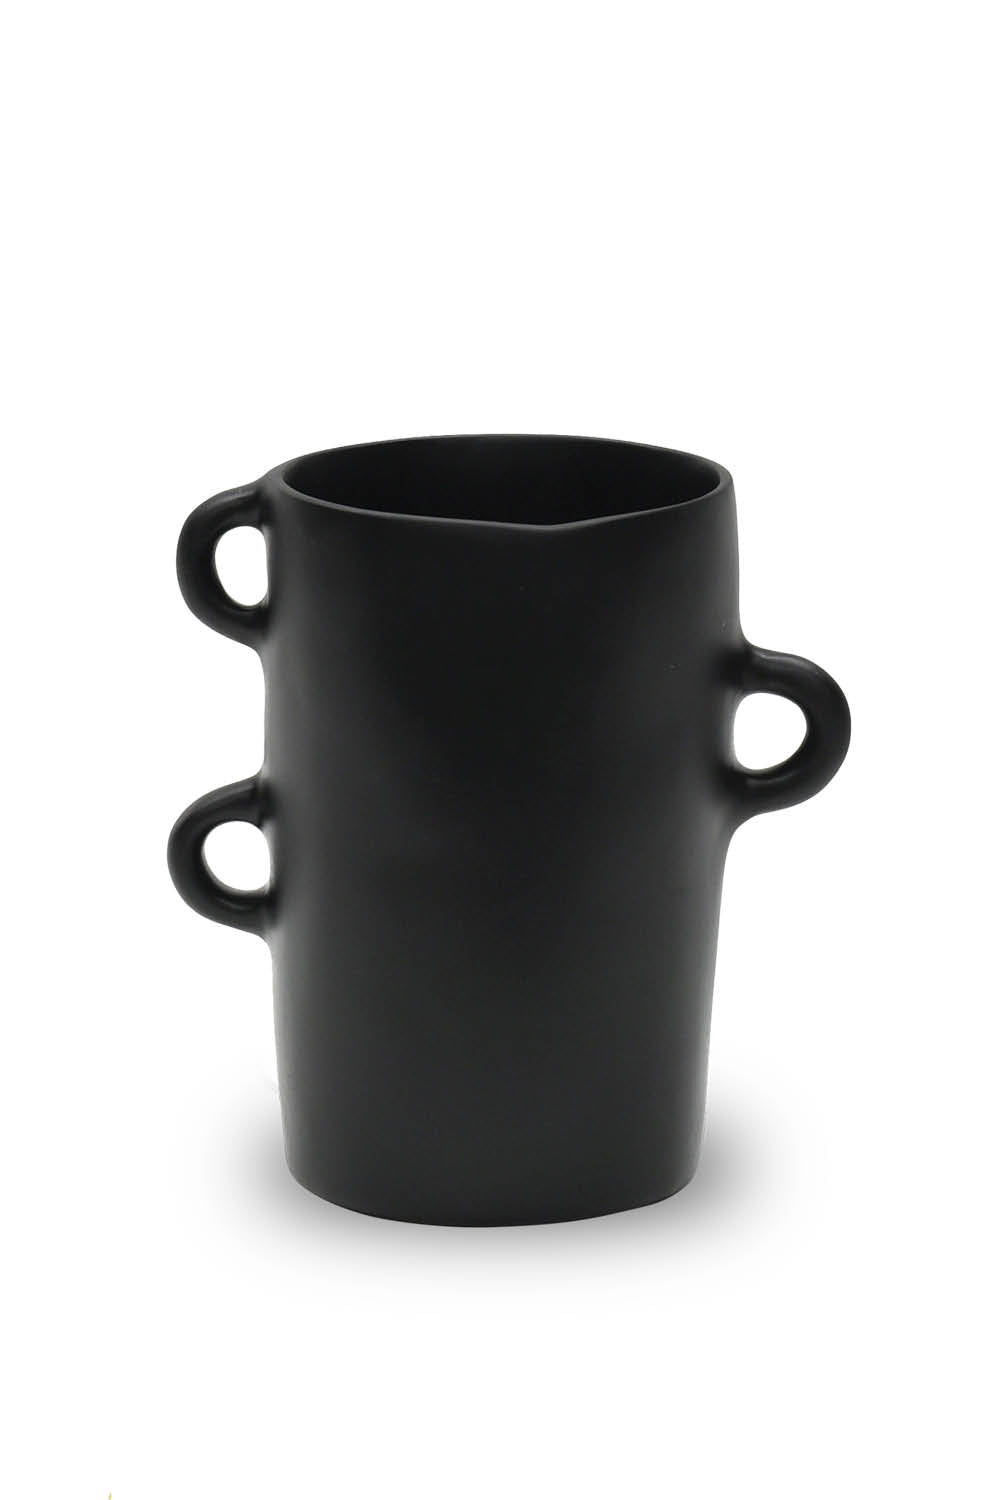 LOOPY Medium Vase in Black